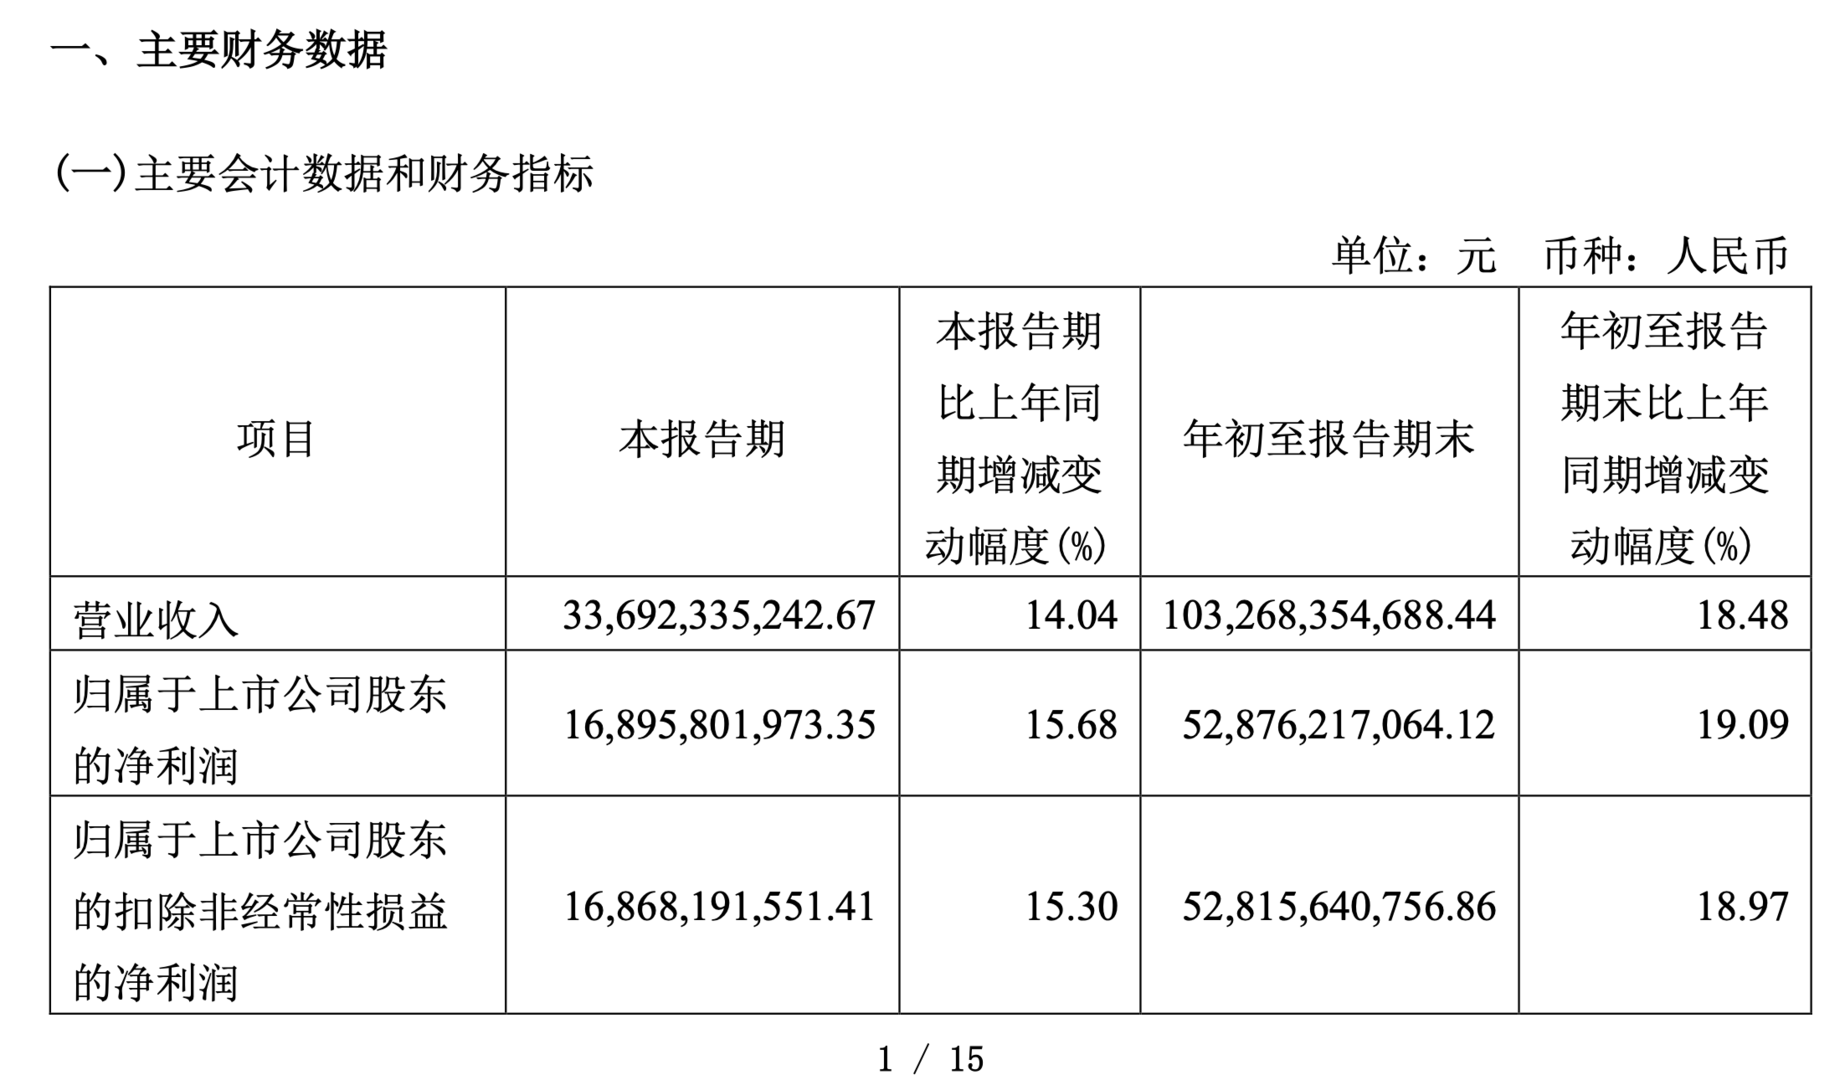 贵州茅台三季度营收净利增长约15%，有望超额完成业绩增速目标